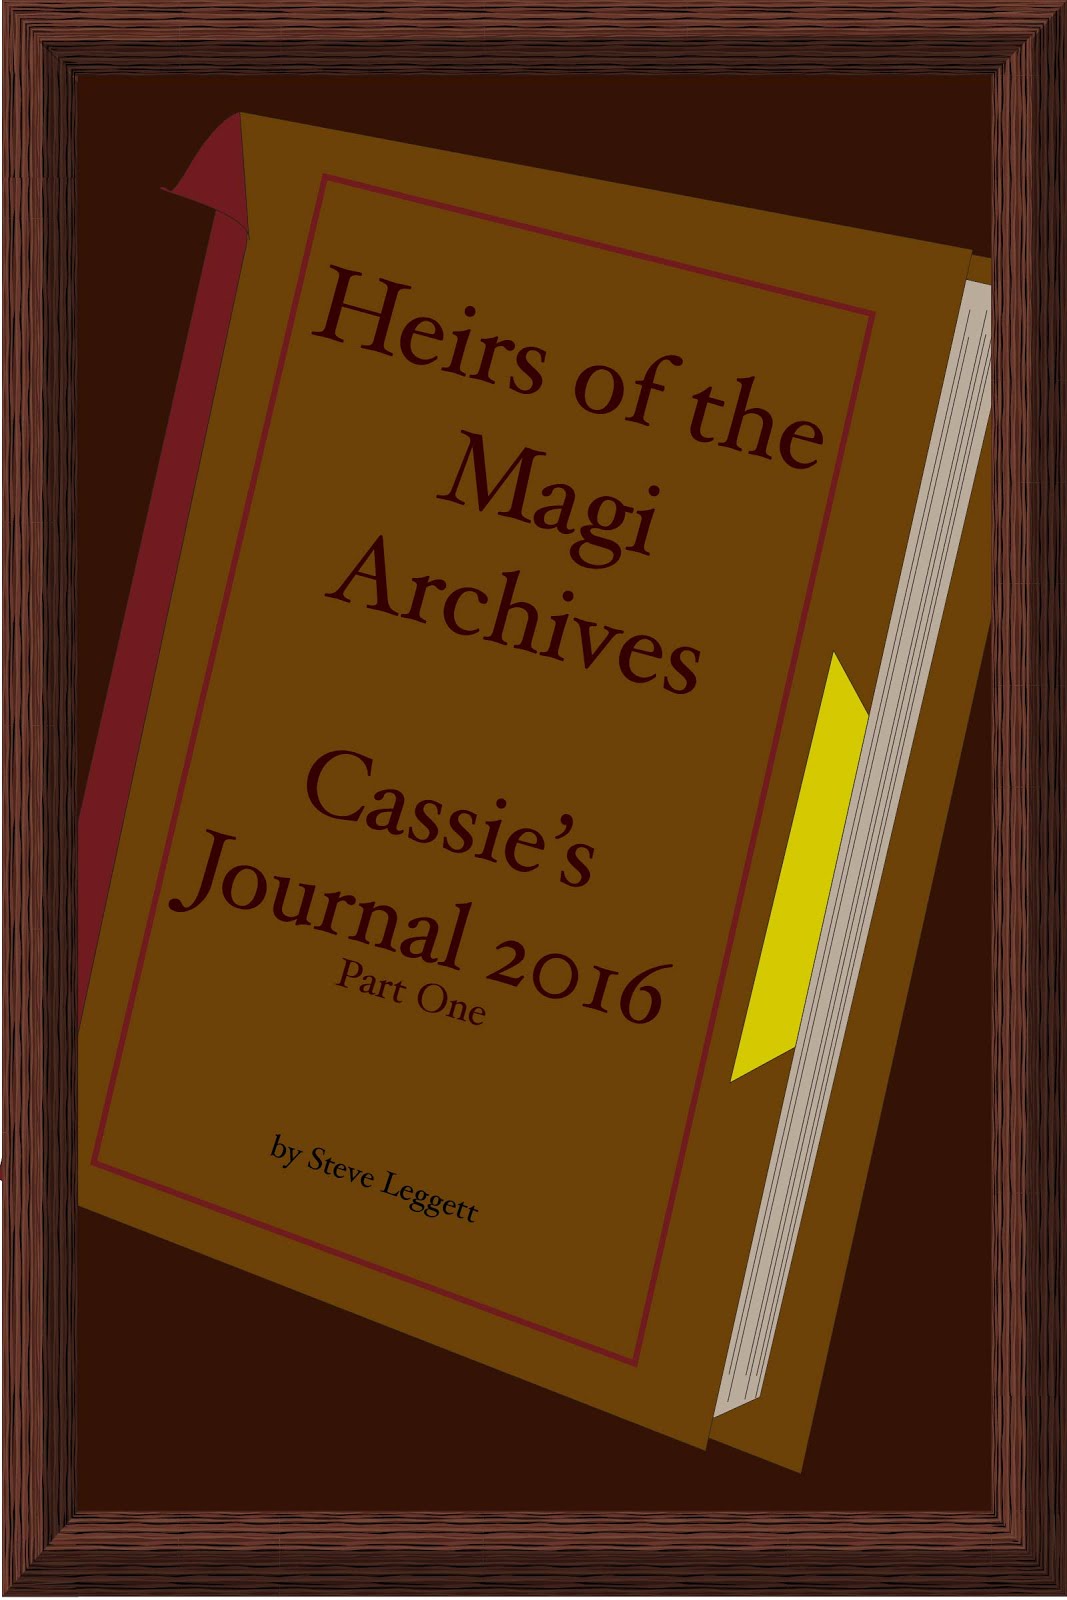 Cassie's Journal 2016 - Part One